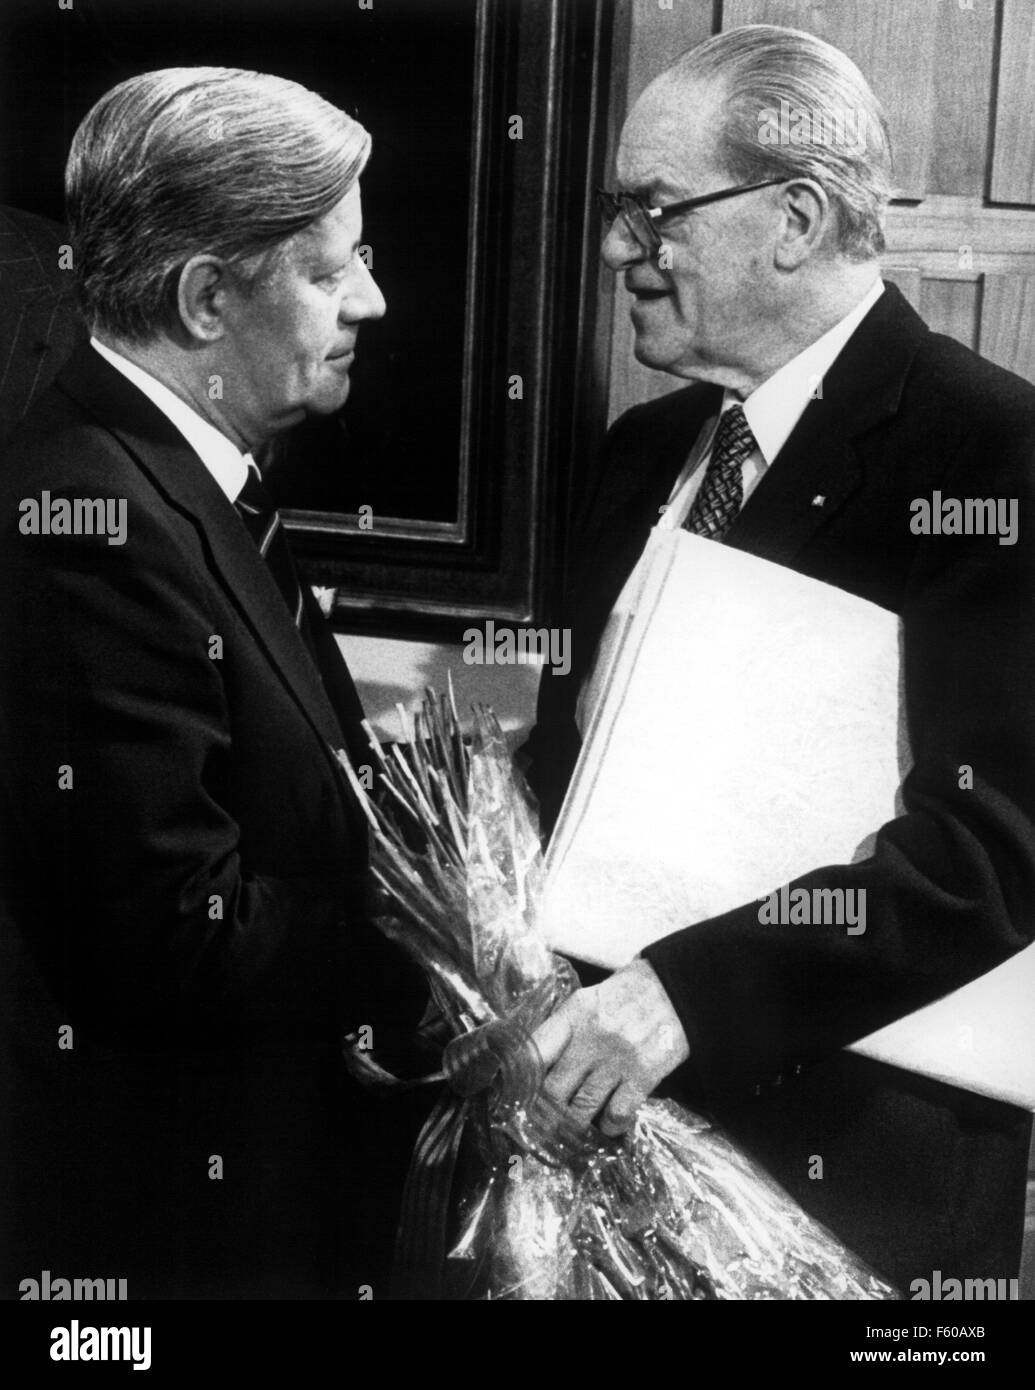 SPD presidente Herbert Wehner (R) si congratula con il cancelliere tedesco Helmut Schmidt (L) sul suo sessantesimo compleanno il 23 dicembre 1978 al Palais Schaumburg. Foto Stock